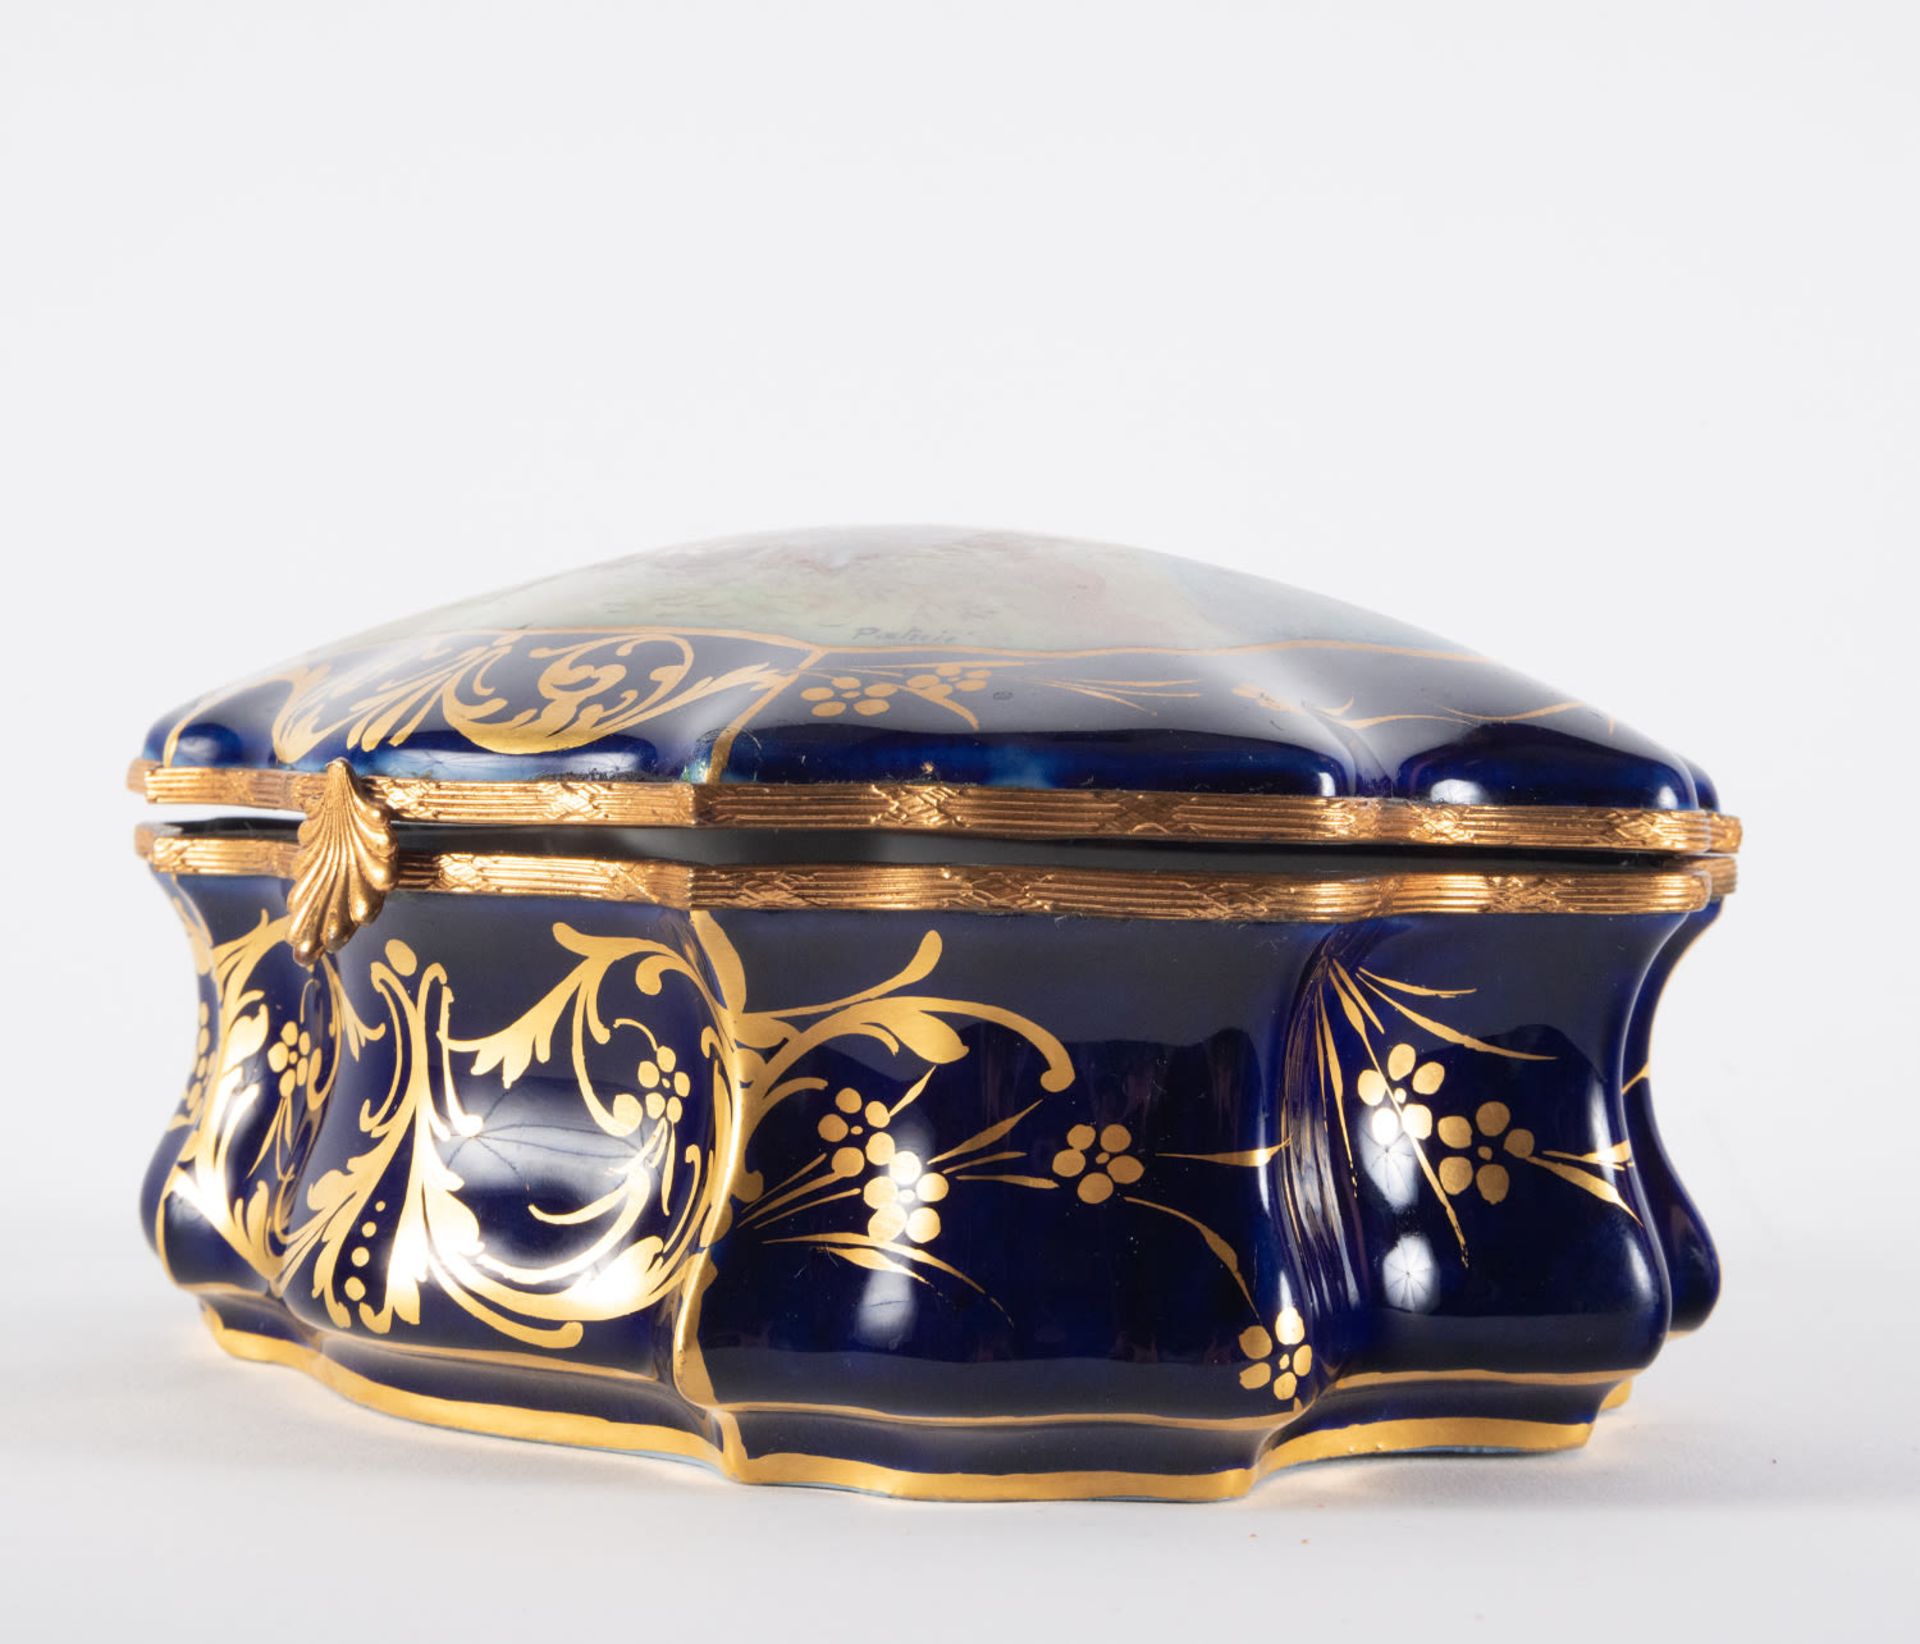 Enamelled Sèvres porcelain jewelry box, 19th century, Chateau de les Etoiles series - Image 4 of 6